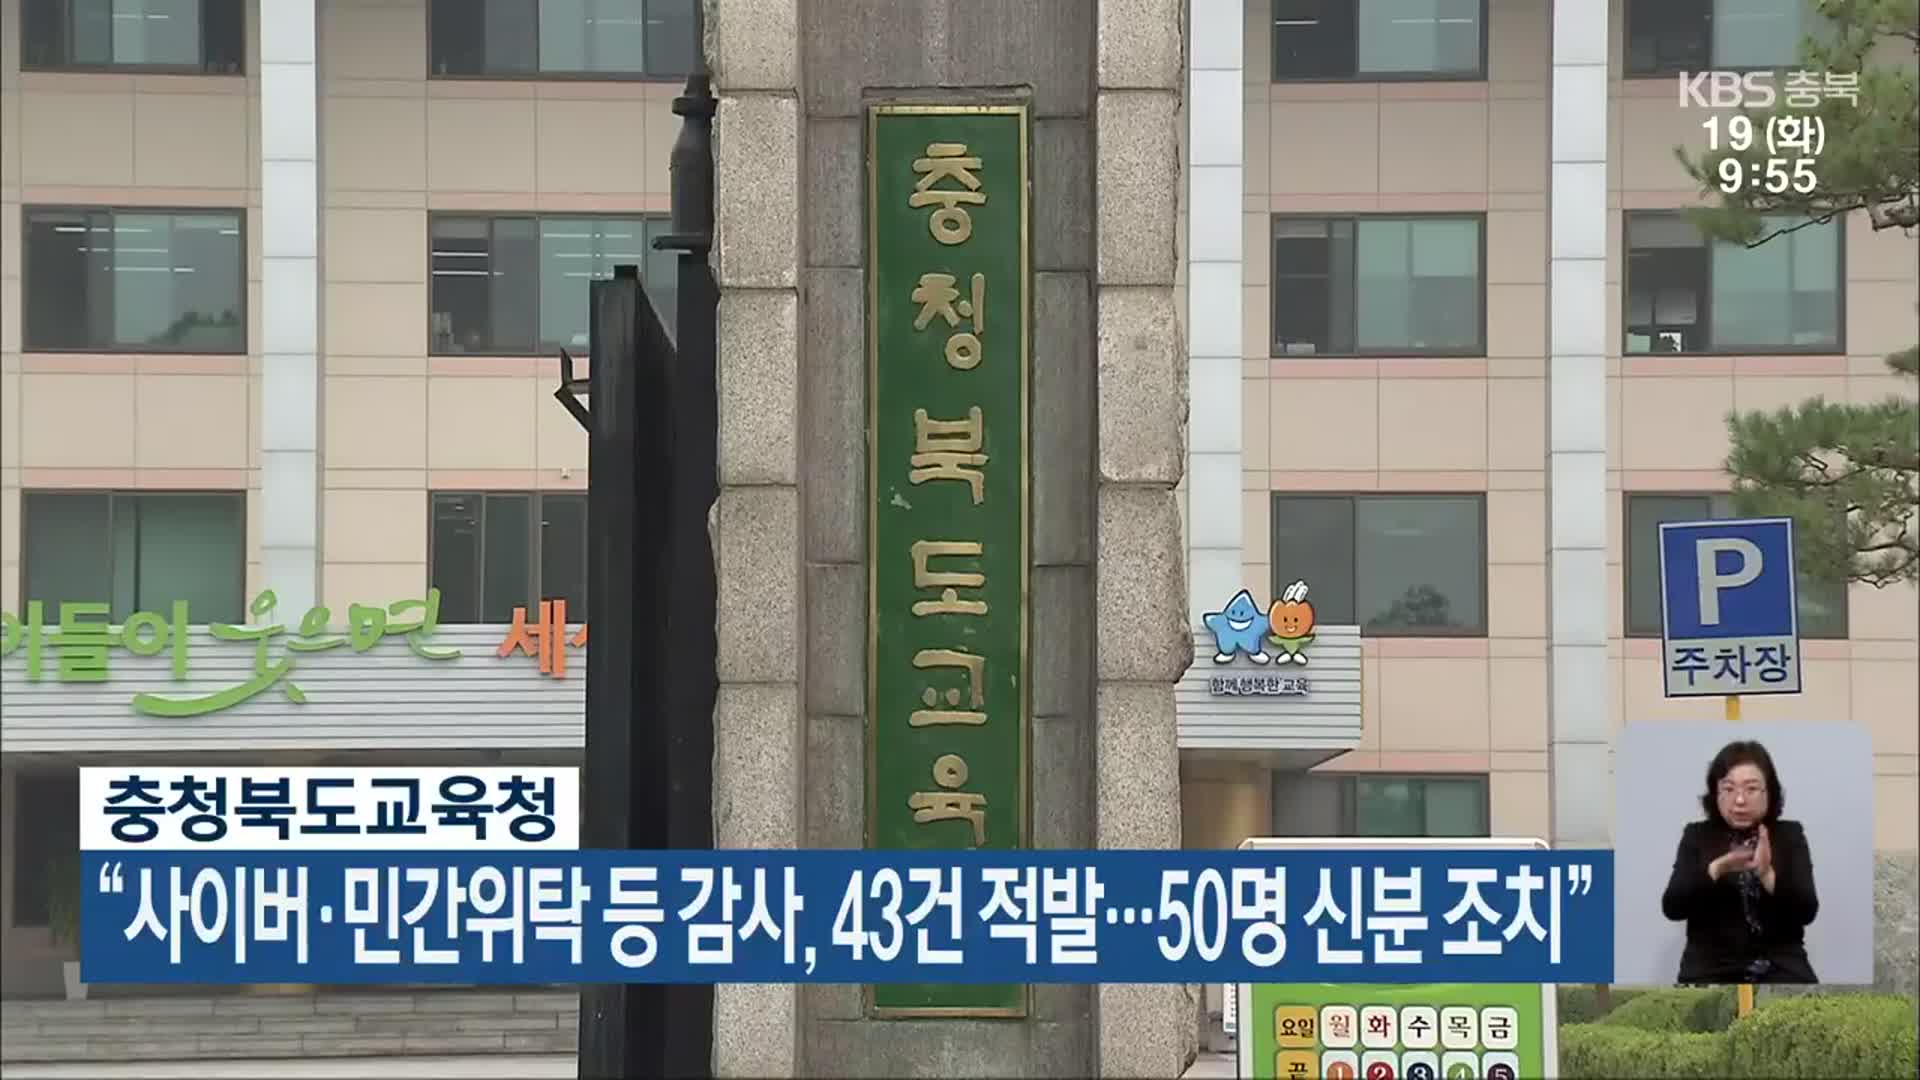 충북교육청 “사이버·민간위탁 등 감사, 43건 적발…50명 신분 조치”